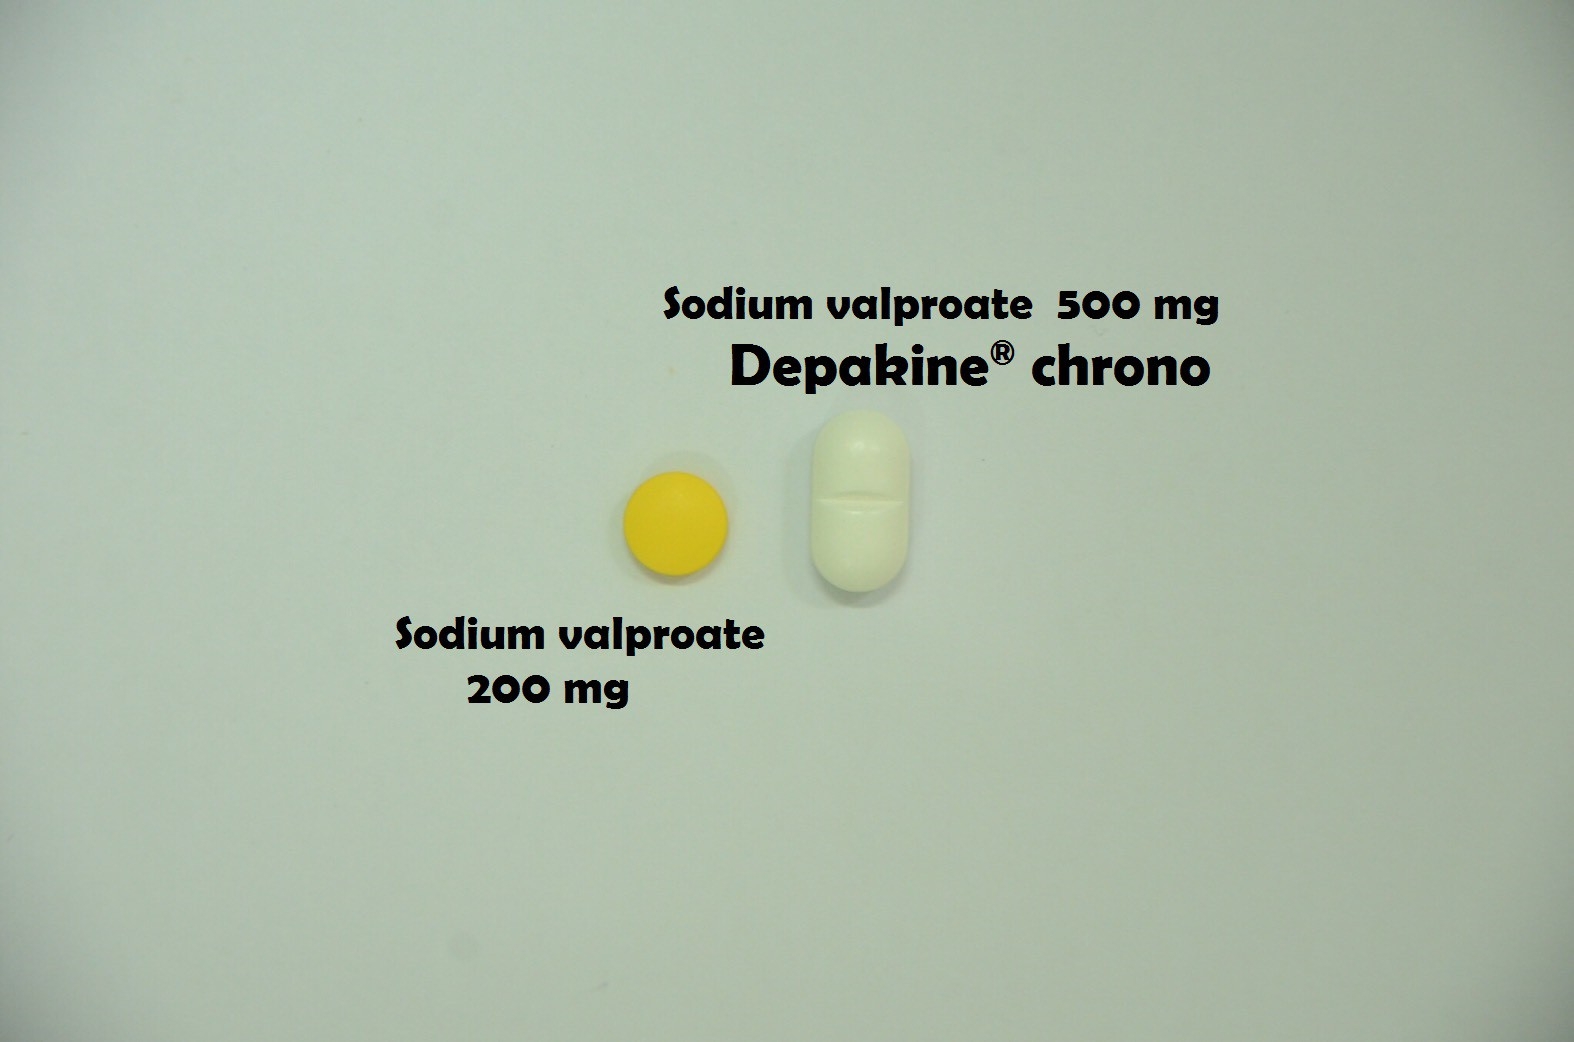 ยาที่มีหลายความแรง : Valproic acid 200 mg และ Valproic acid 500 mg  (Depkain® chrono)